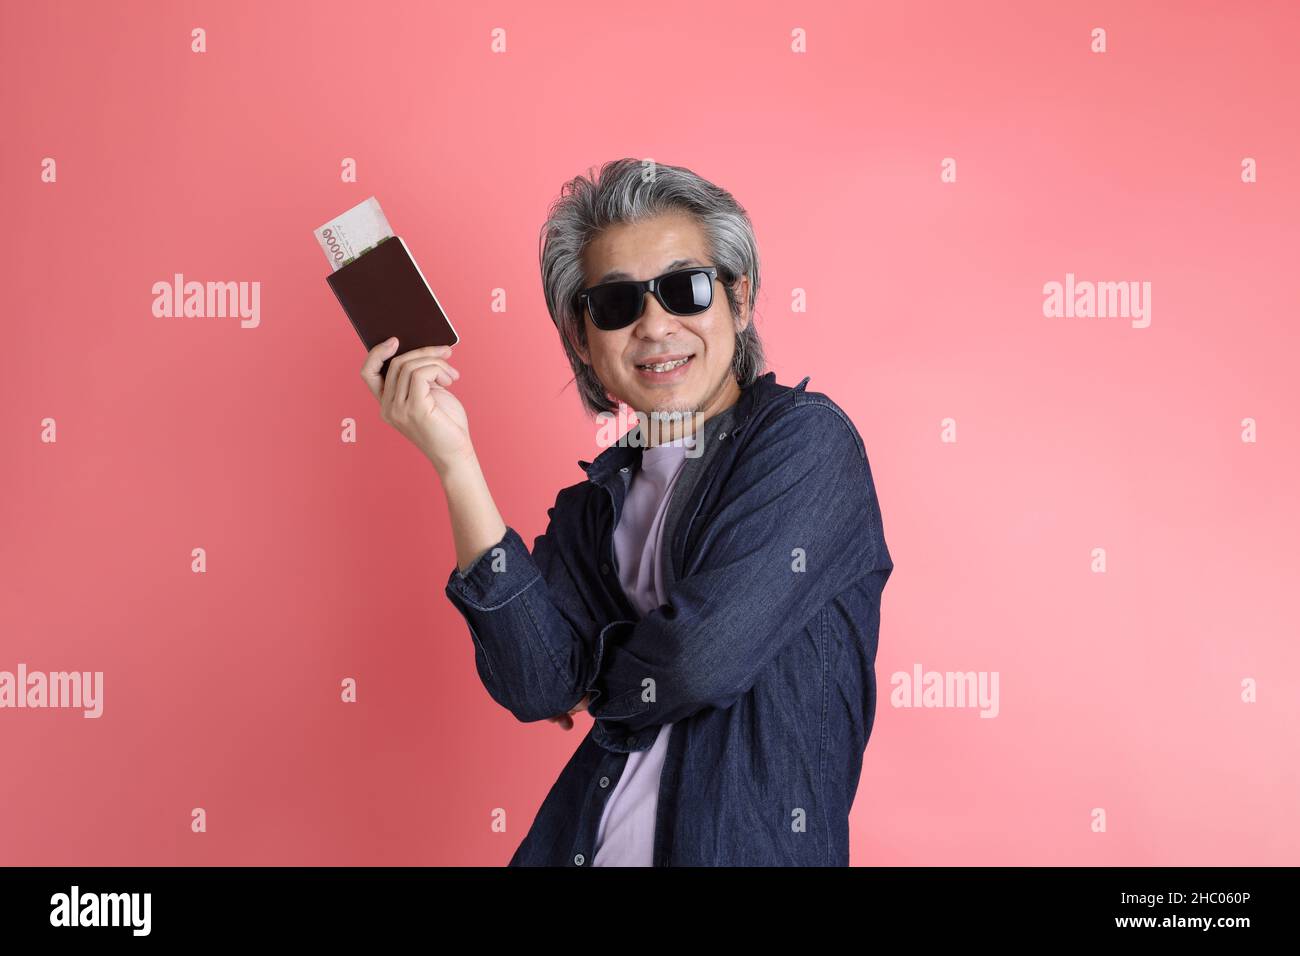 Der asiatische Mann, der auf dem rosa Hintergrund steht. Stockfoto